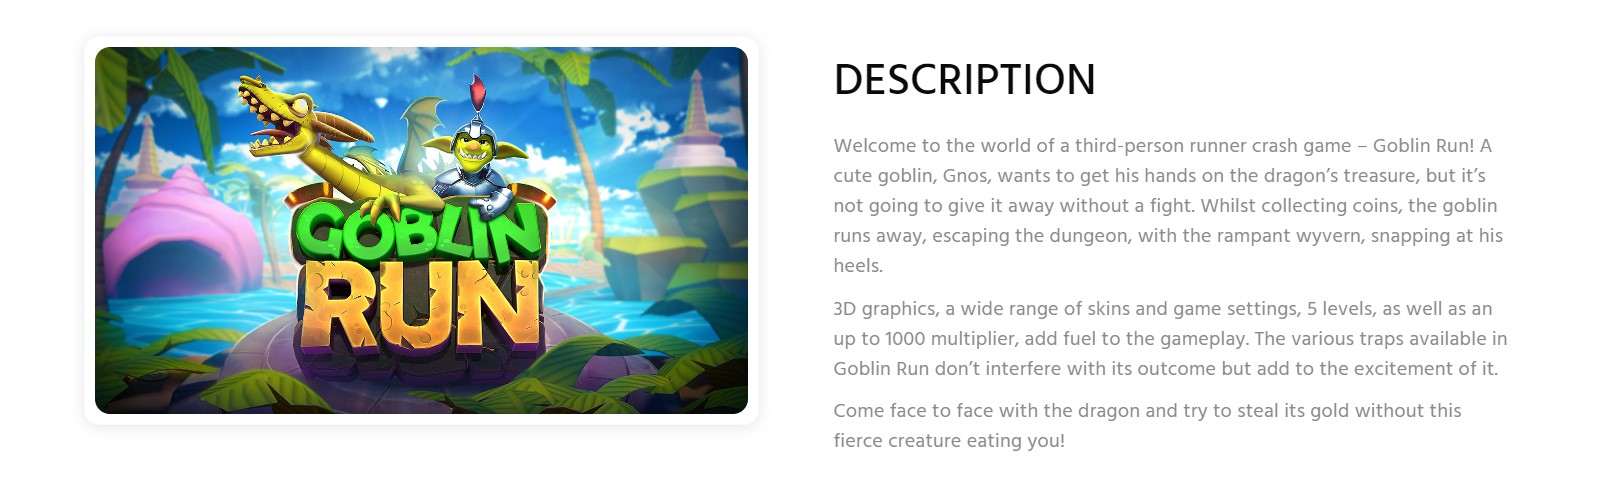 Descrição do jogo Goblin Run